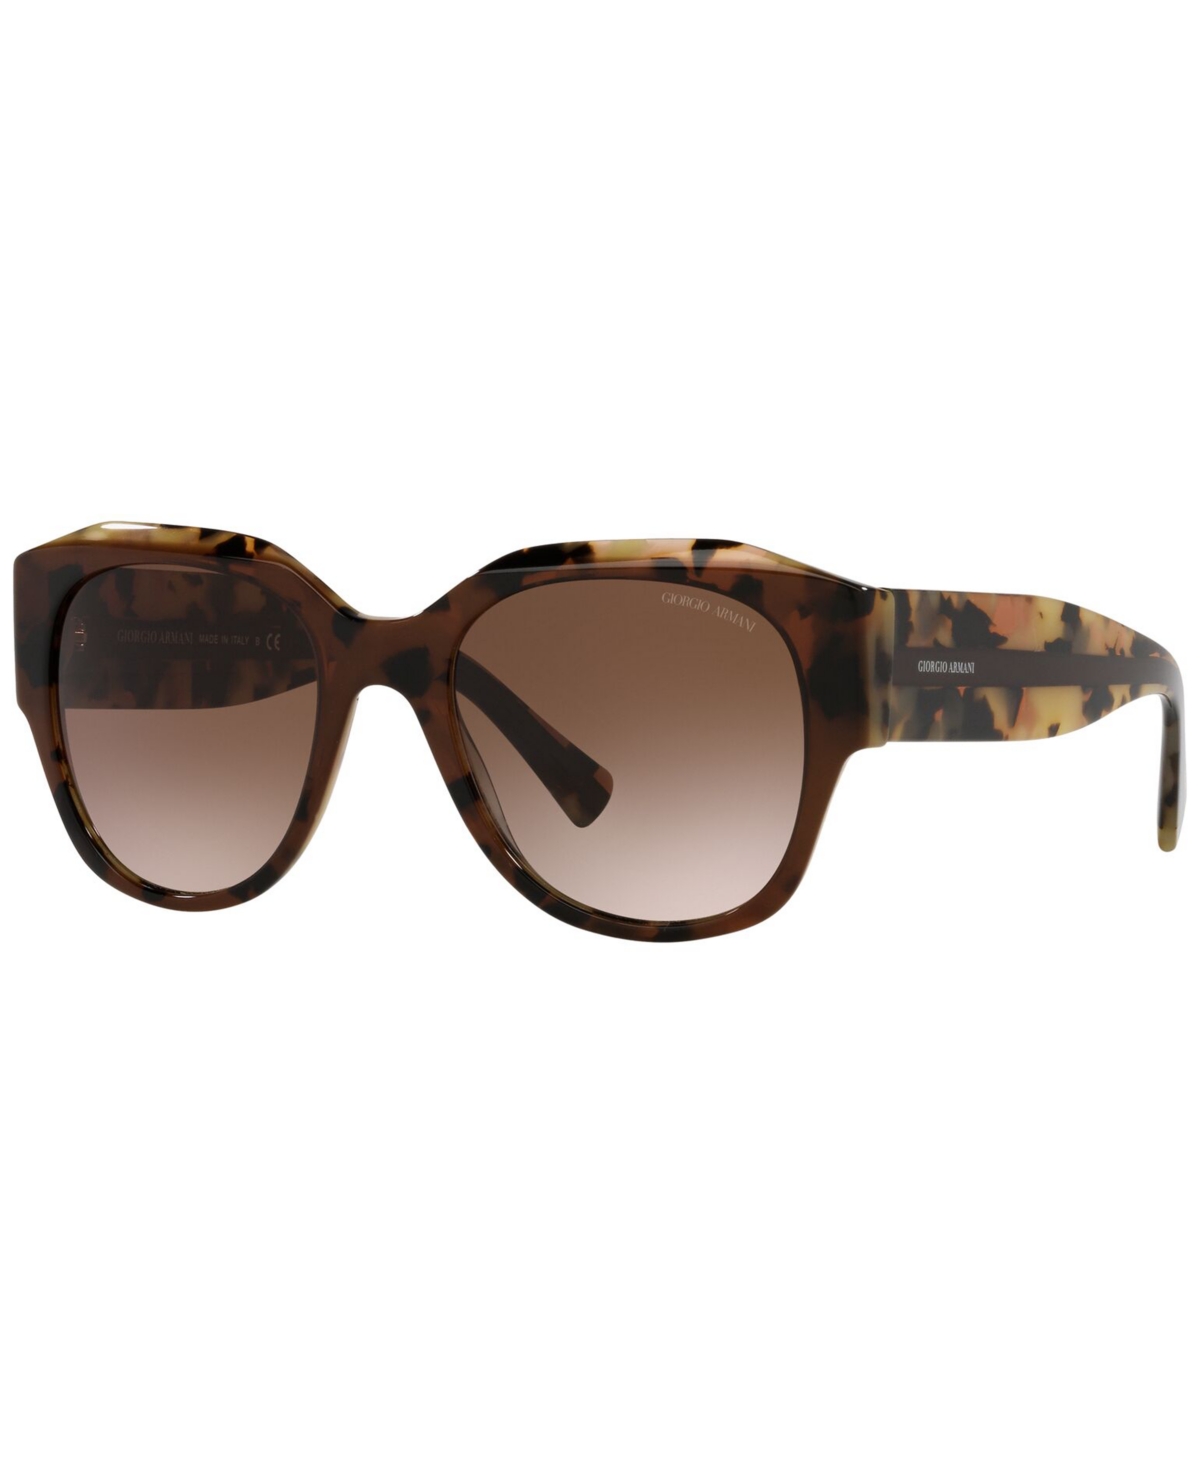 Giorgio Armani Women's Sunglasses, Ar8140 53 In Brown Tortoise,gradient Brown